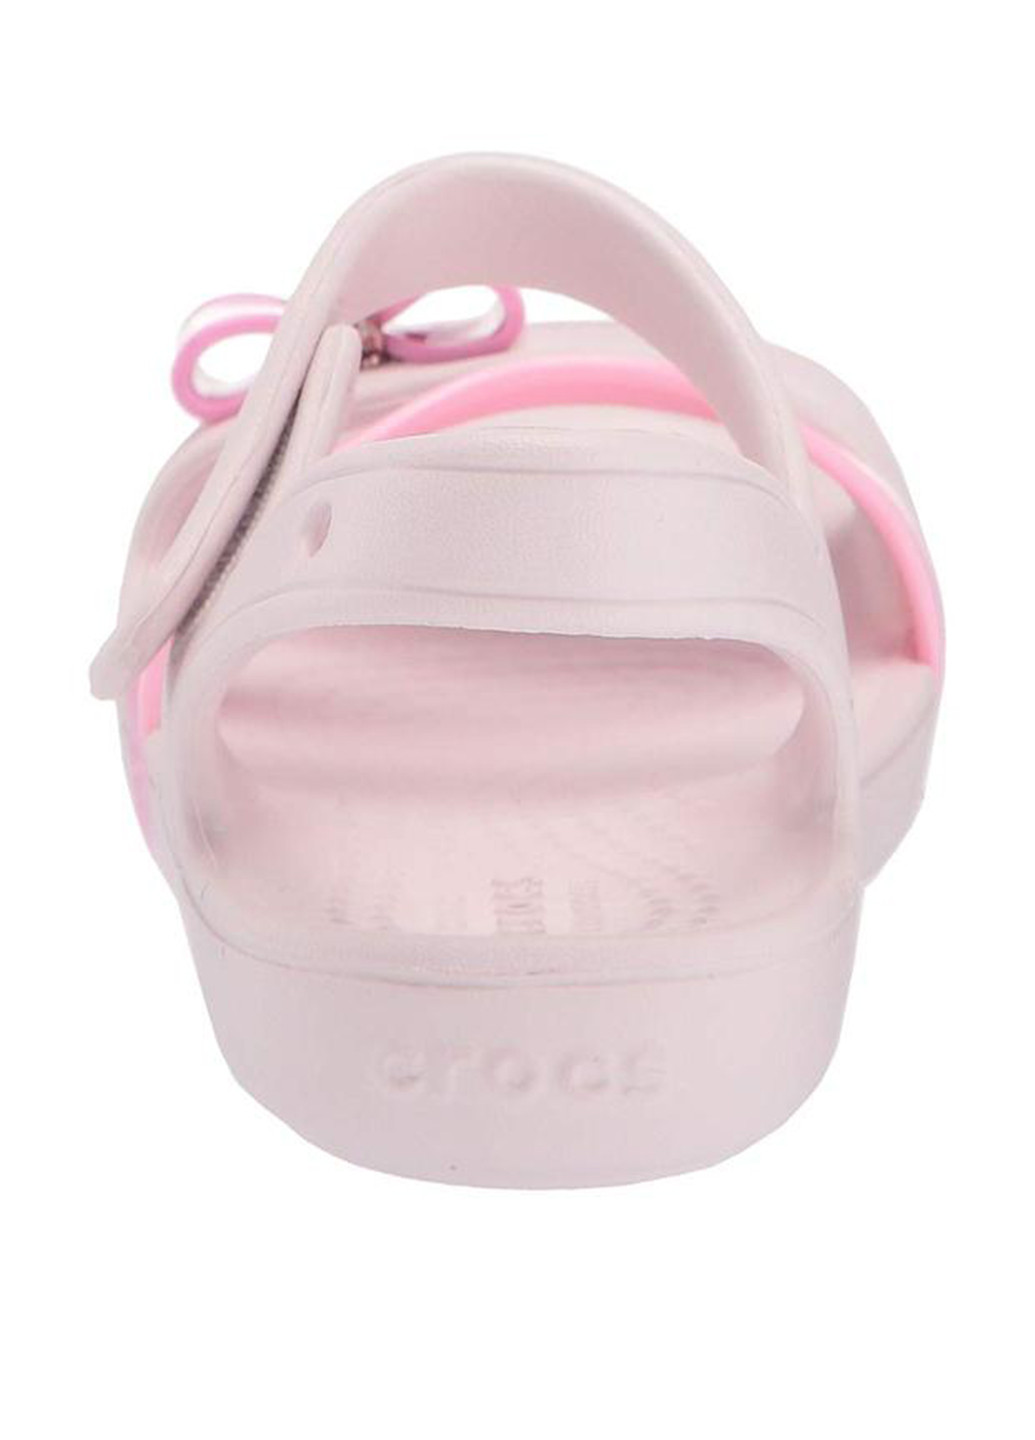 Светло-розовые пляжные сандалии Crocs на липучке